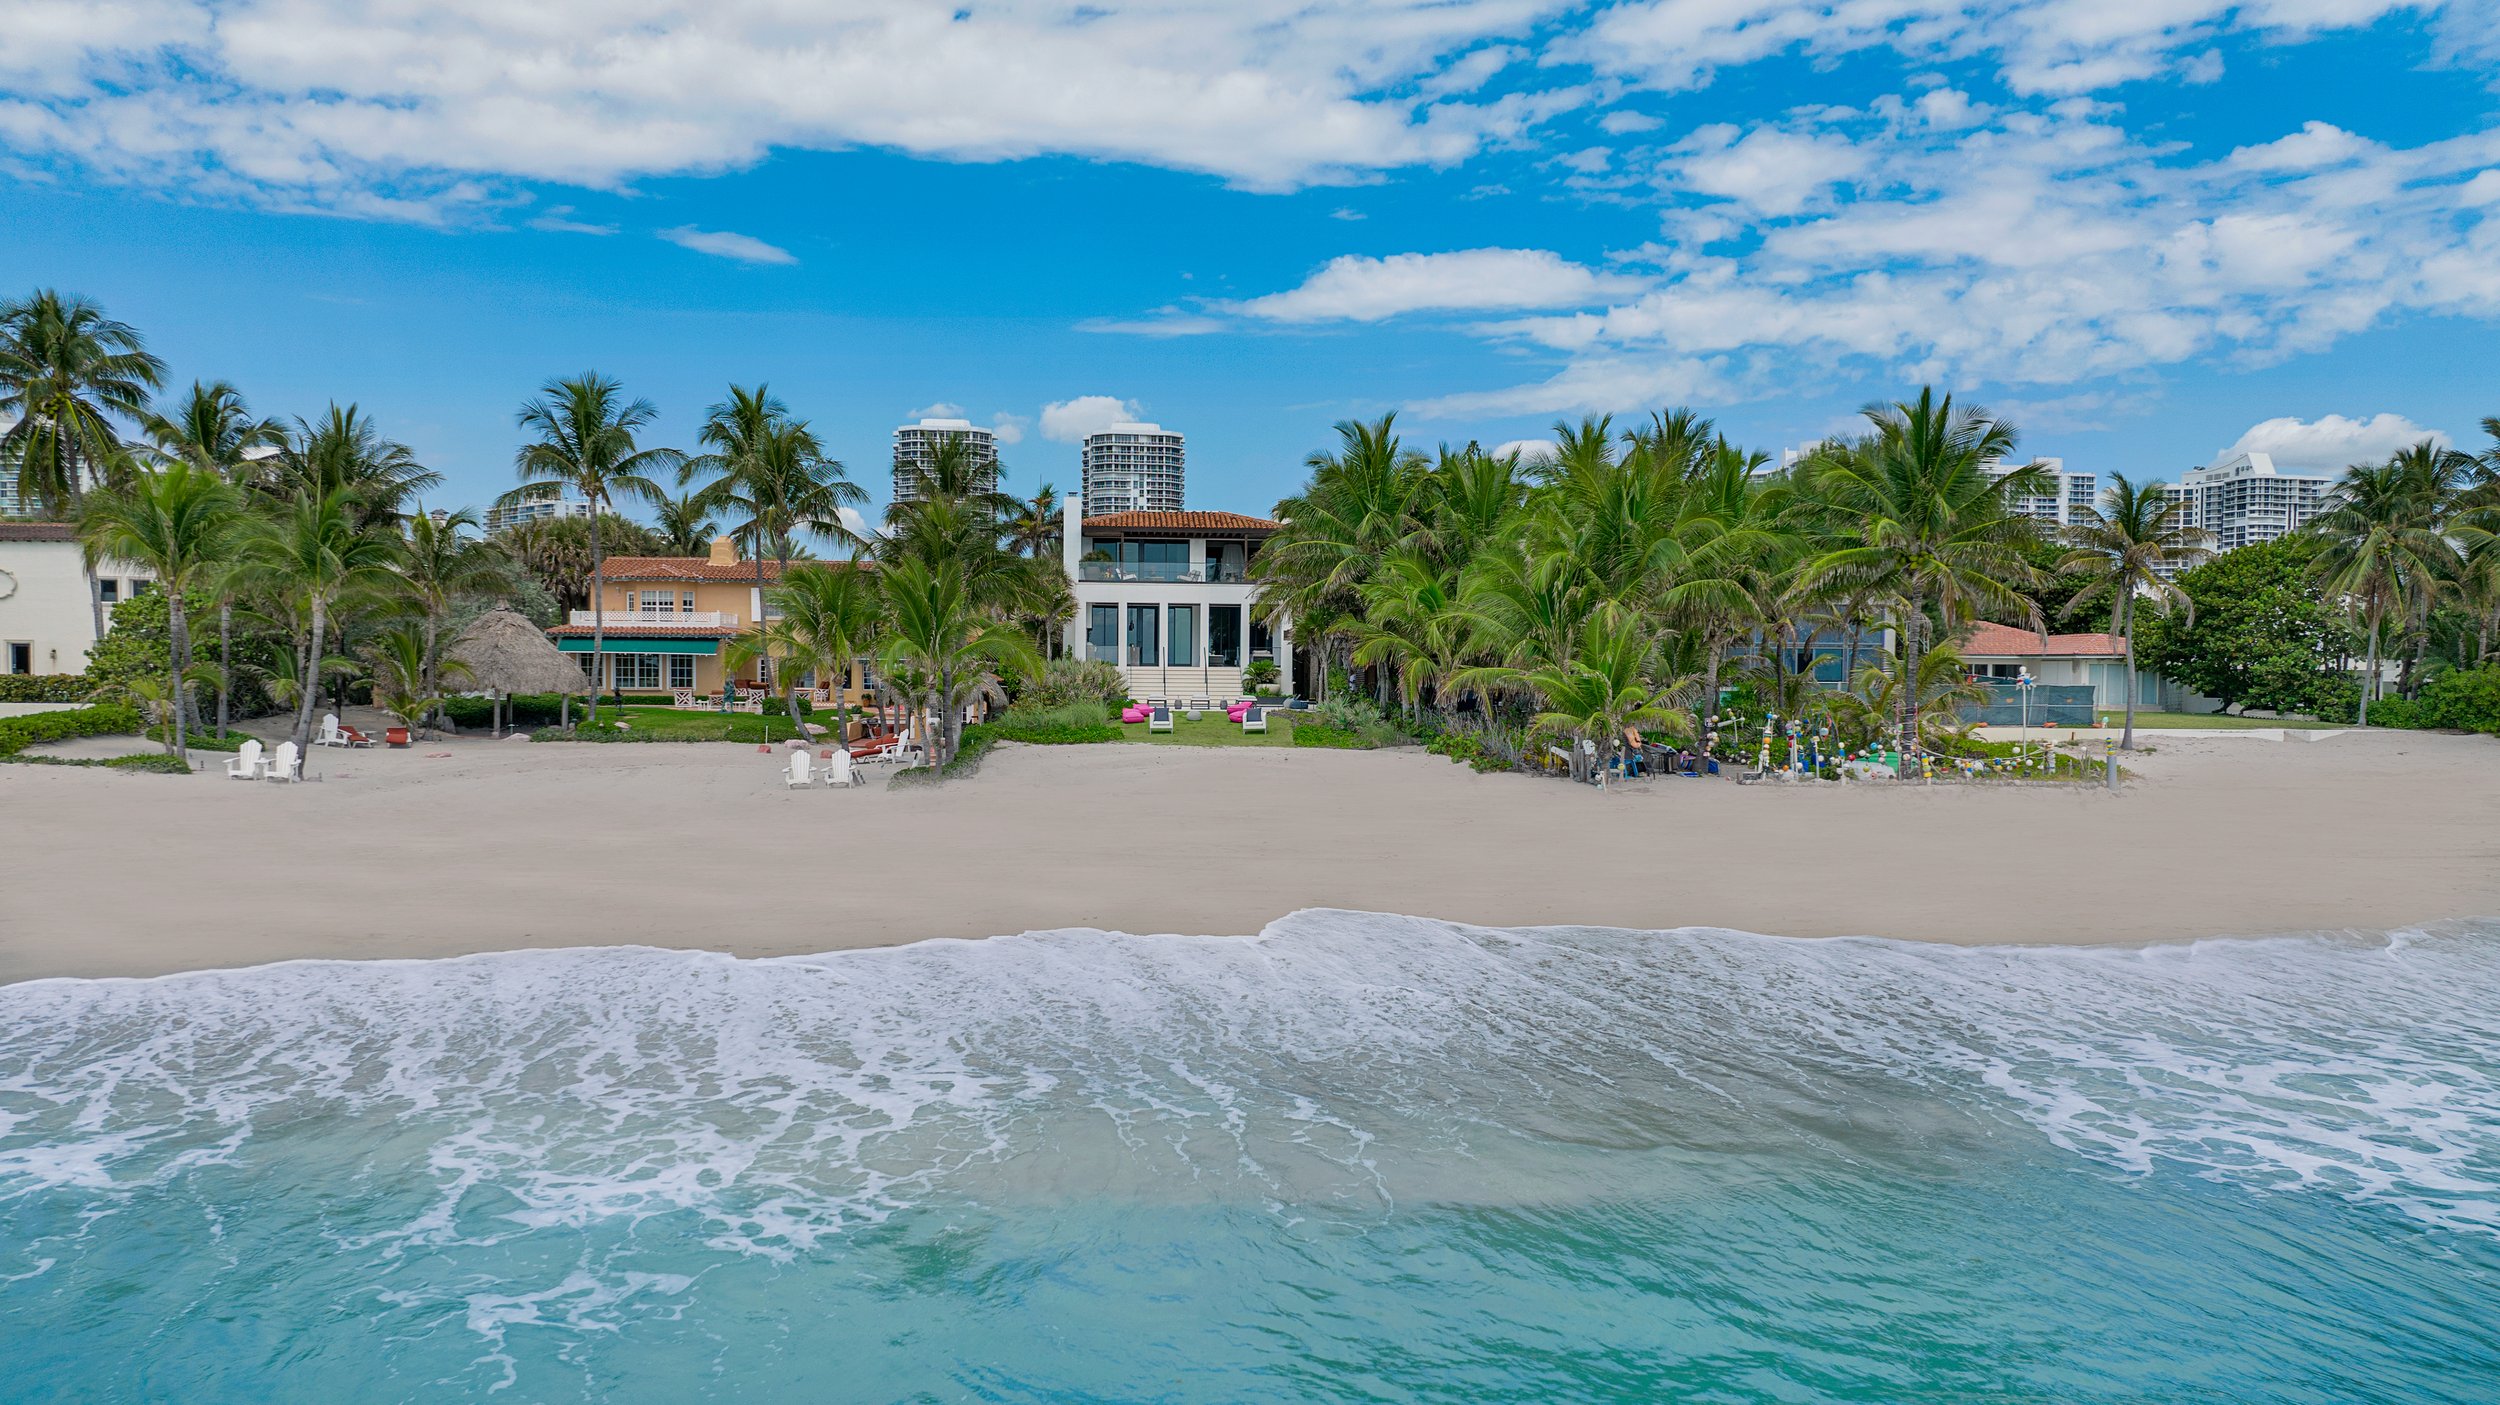 Radio Mogul Tom Joyner Sells Golden Beach Oceanfront Home For $19 Million 12.jpg